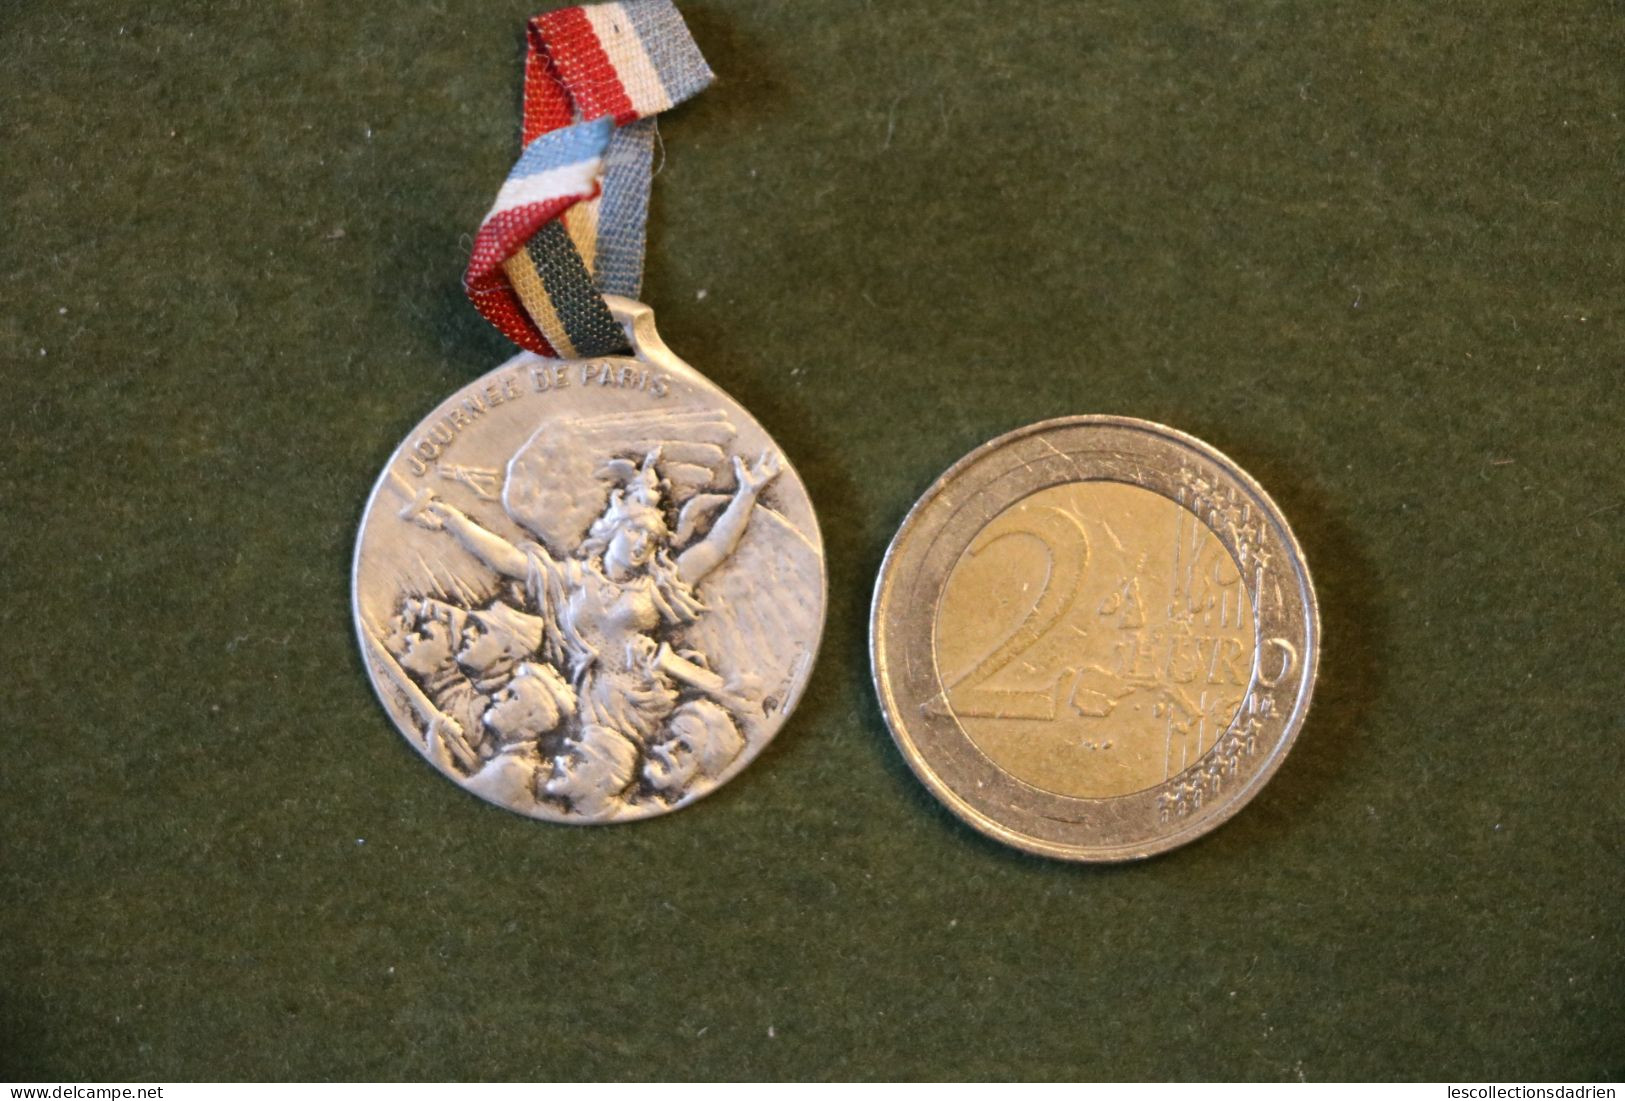 Médaille Française Journée De Paris14-18 - French Medal WWI Médaillette Journée - Bargas - France